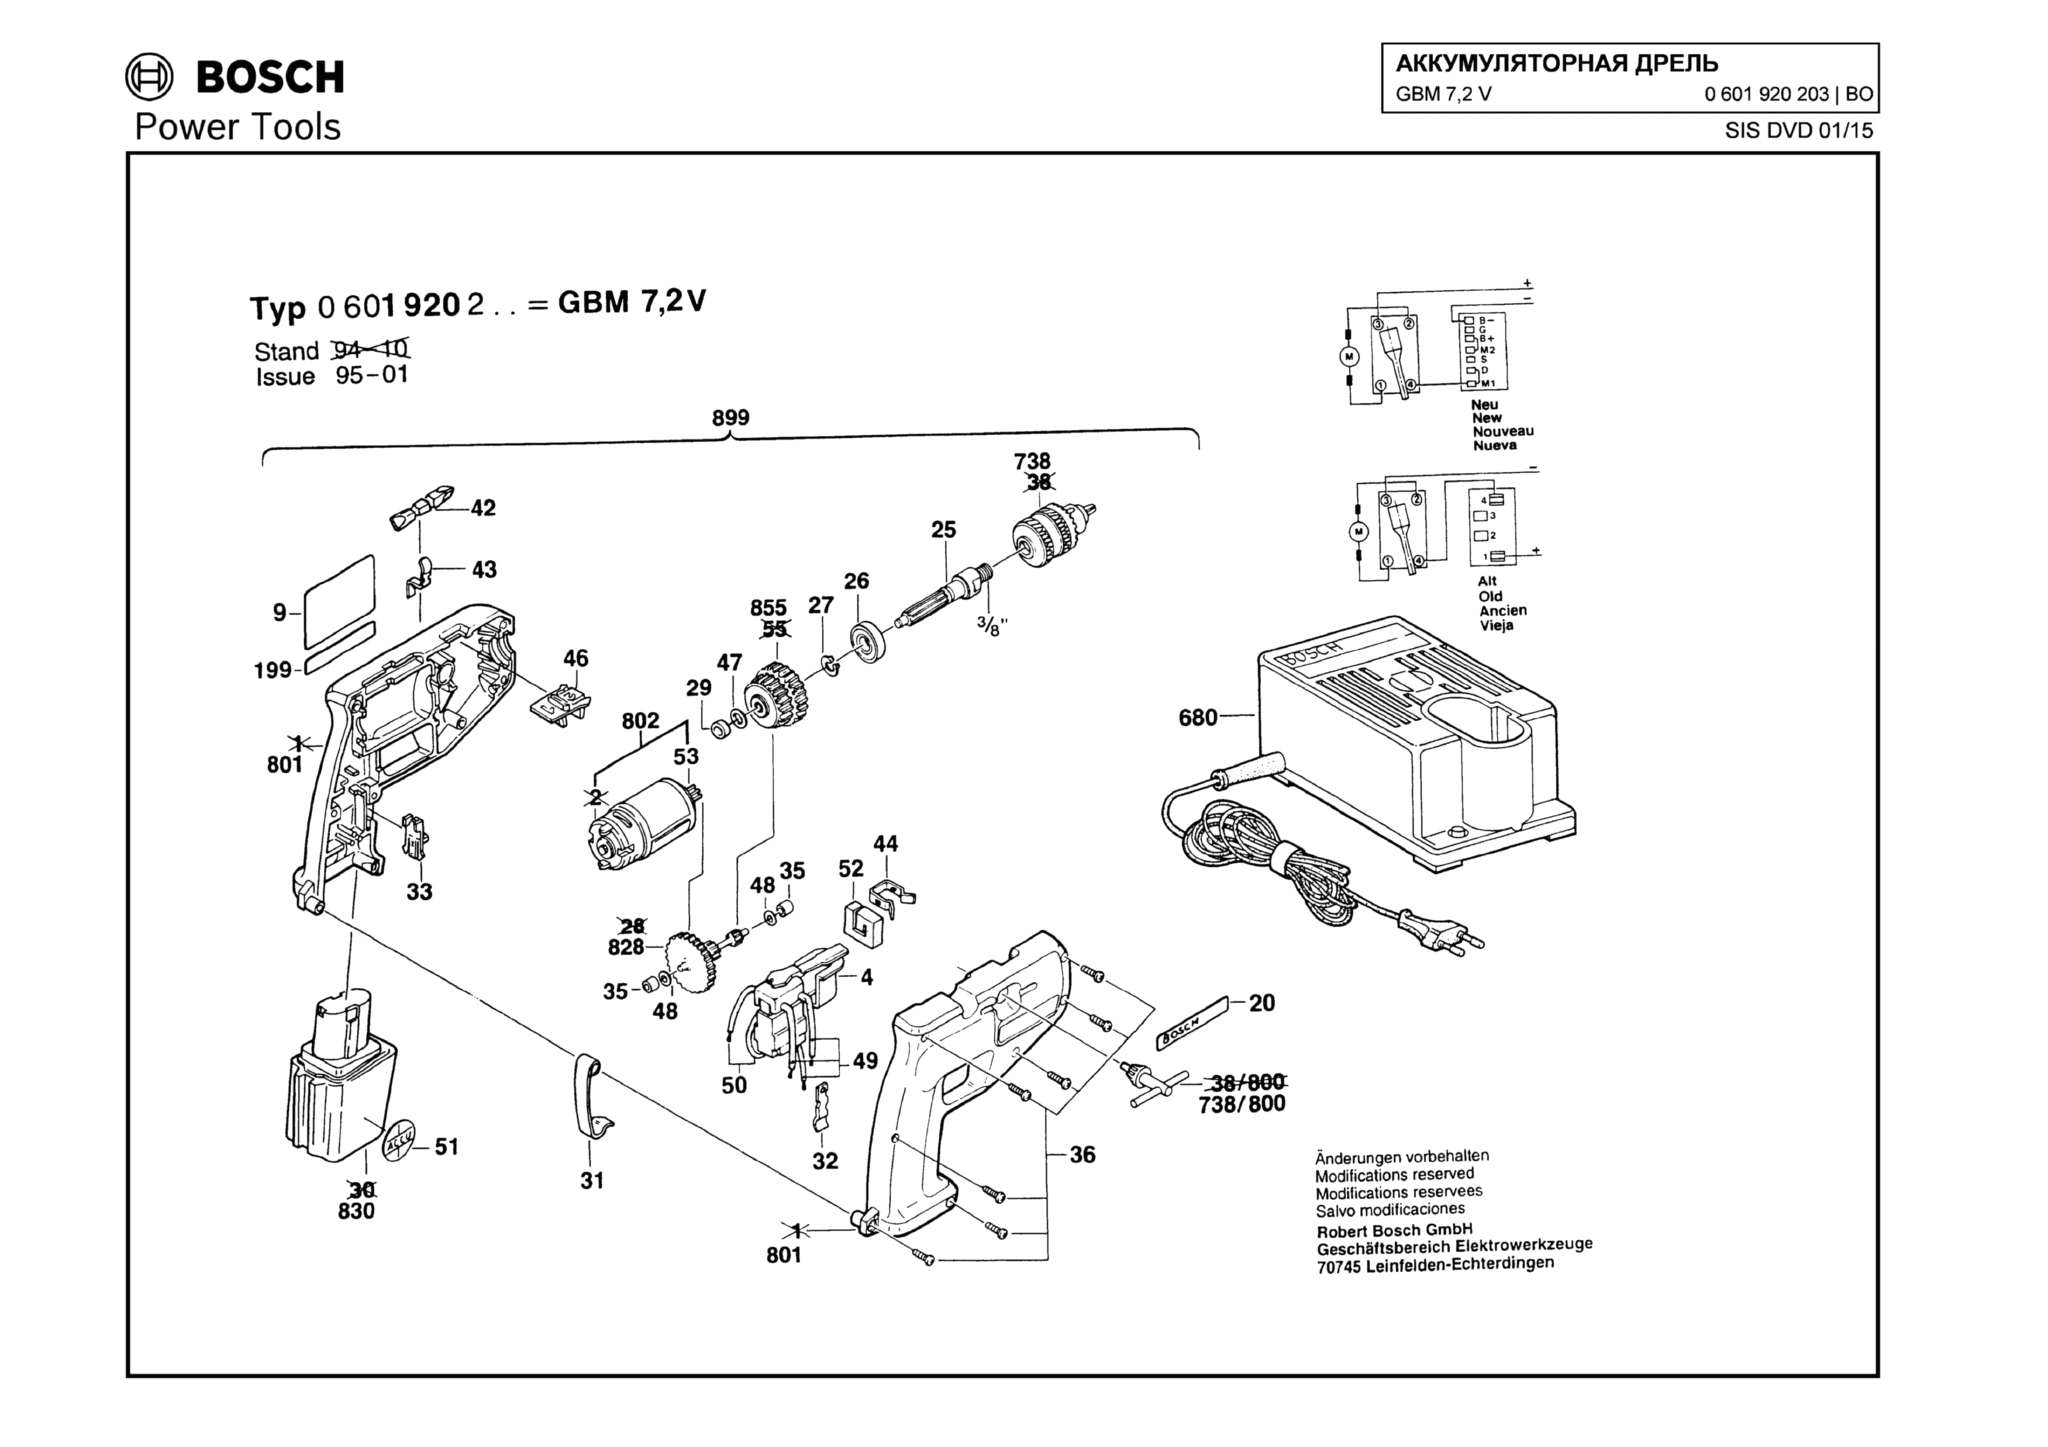 Запчасти, схема и деталировка Bosch GBM 7,2 V (ТИП 0601920203)